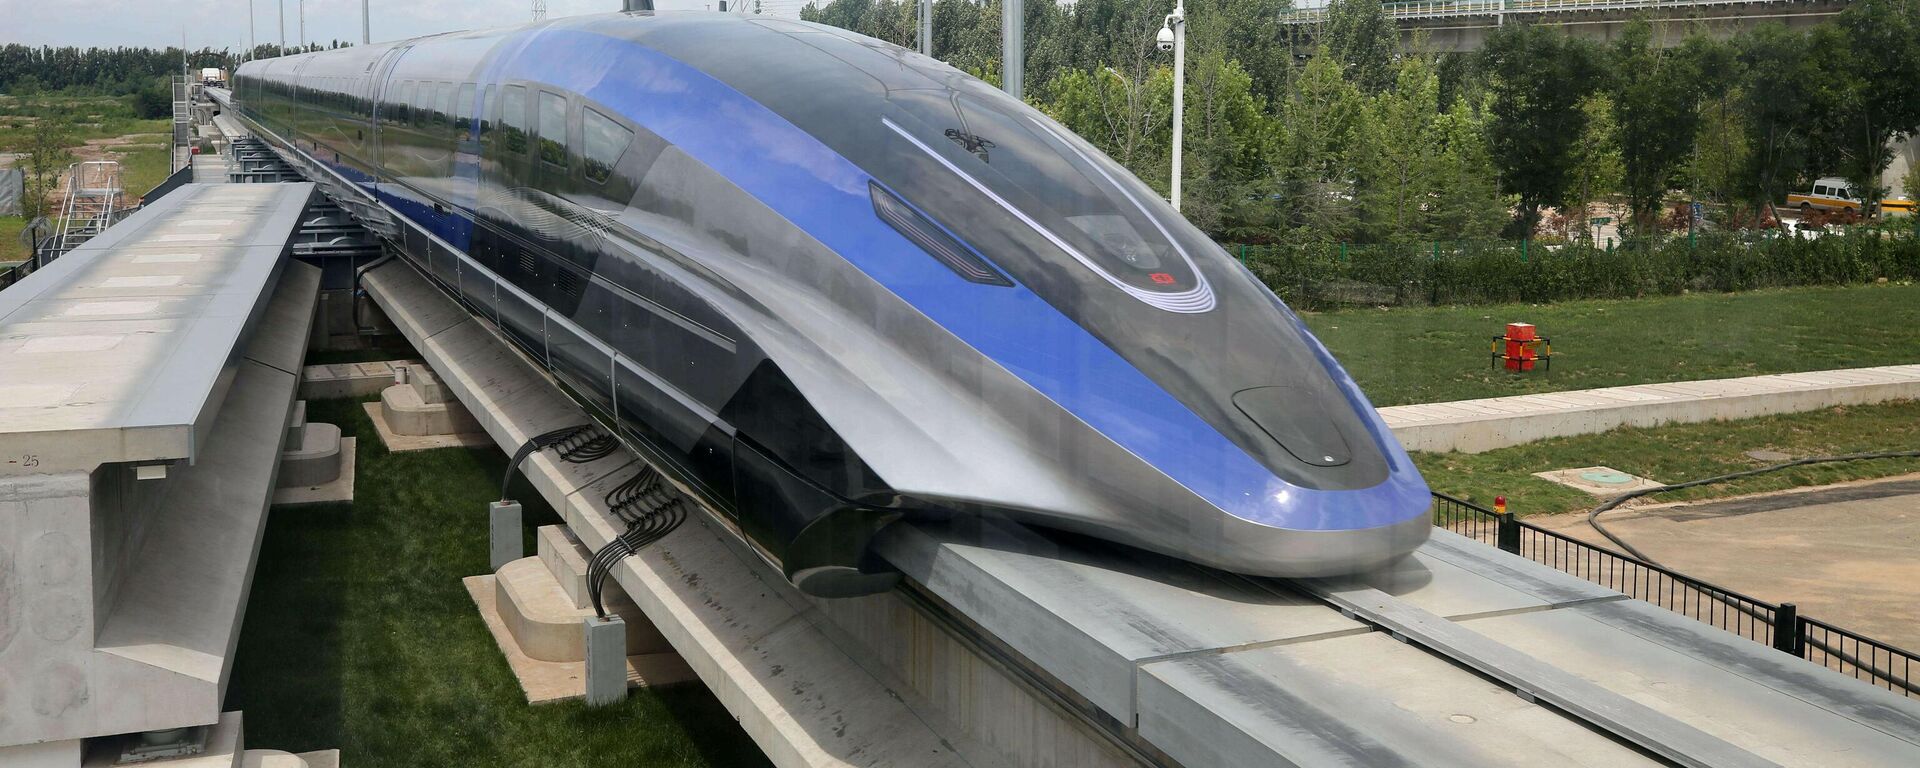 Kineski novi brzi voz dostiže brzinu od 600 kilometara na sat - Sputnik Srbija, 1920, 20.07.2021